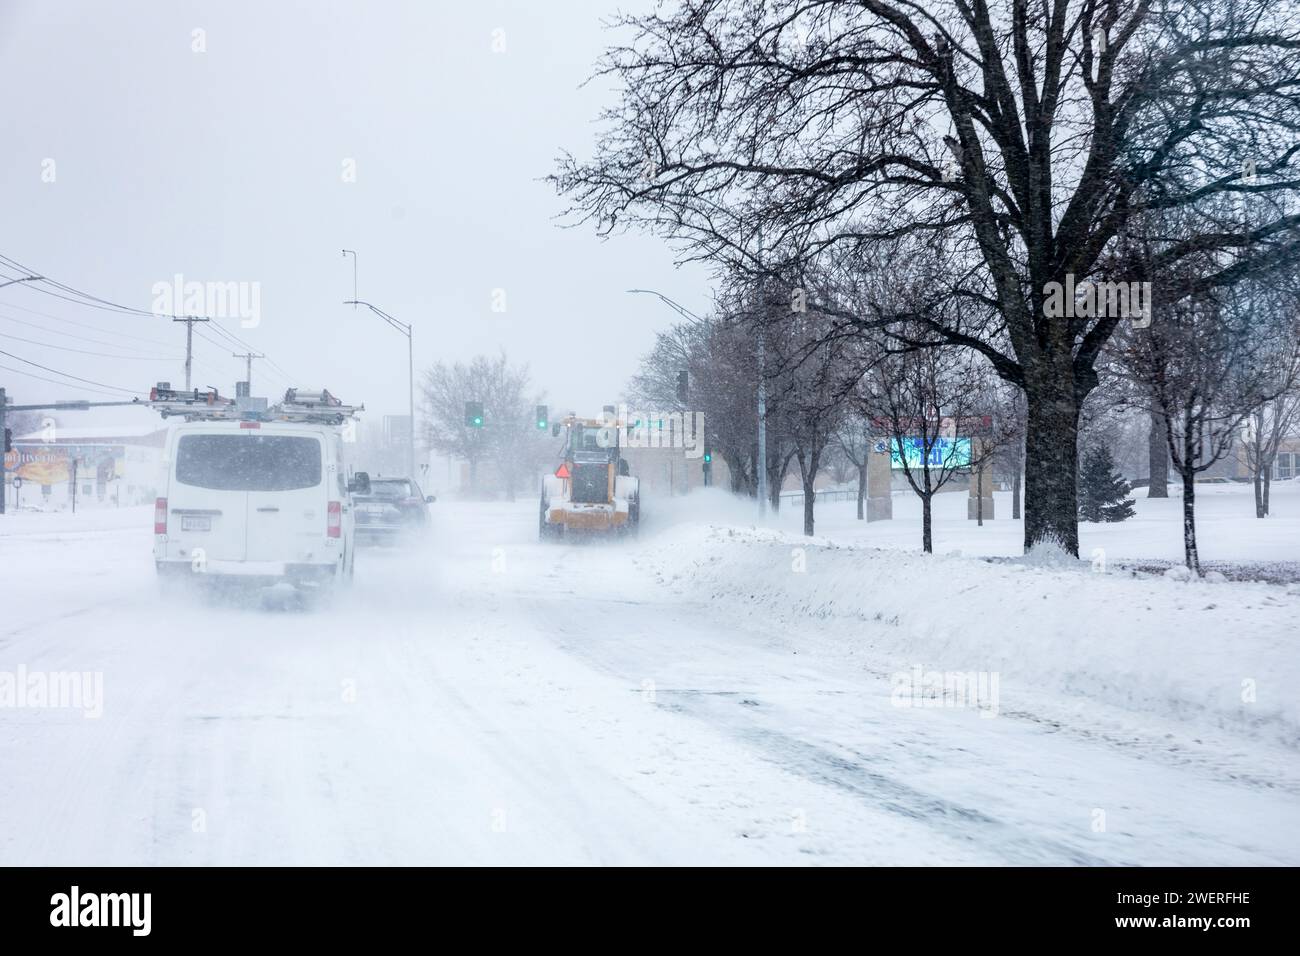 La neige souffle sur une route pendant une tempête hivernale. Banque D'Images